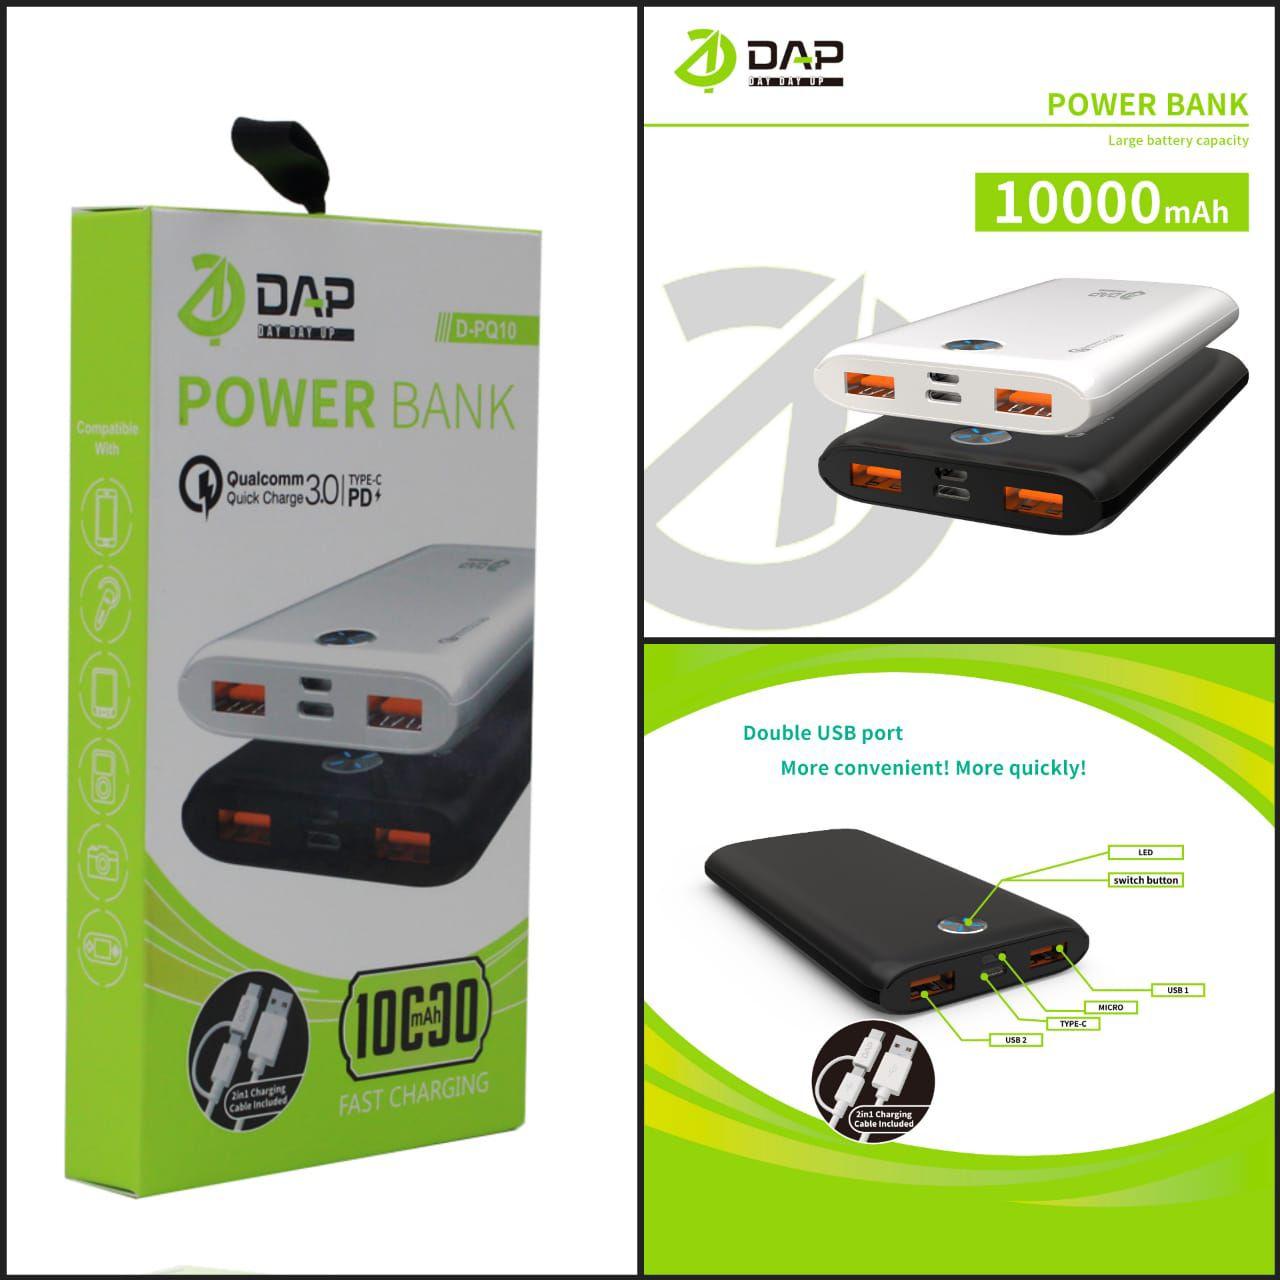 POWER BANK DAP D-PQ10 10.000 MAH